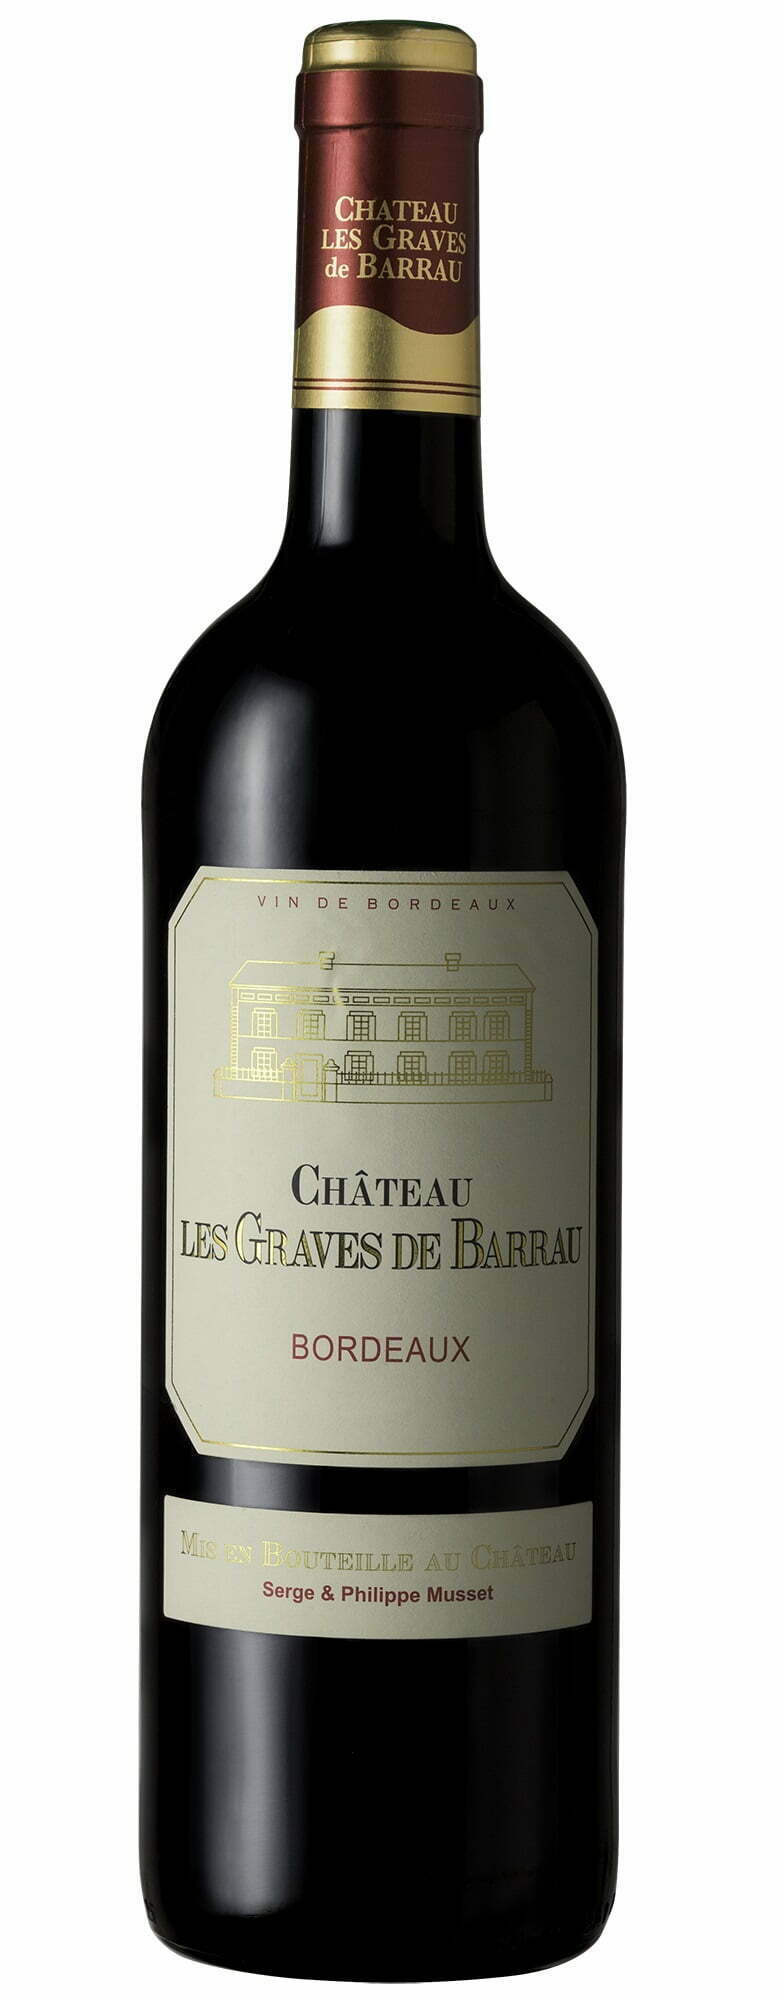 Petit Chateau Chateau Les Graves de Barrau 2020 Bordeaux (1x75cl) - TwoMoreGlasses.com